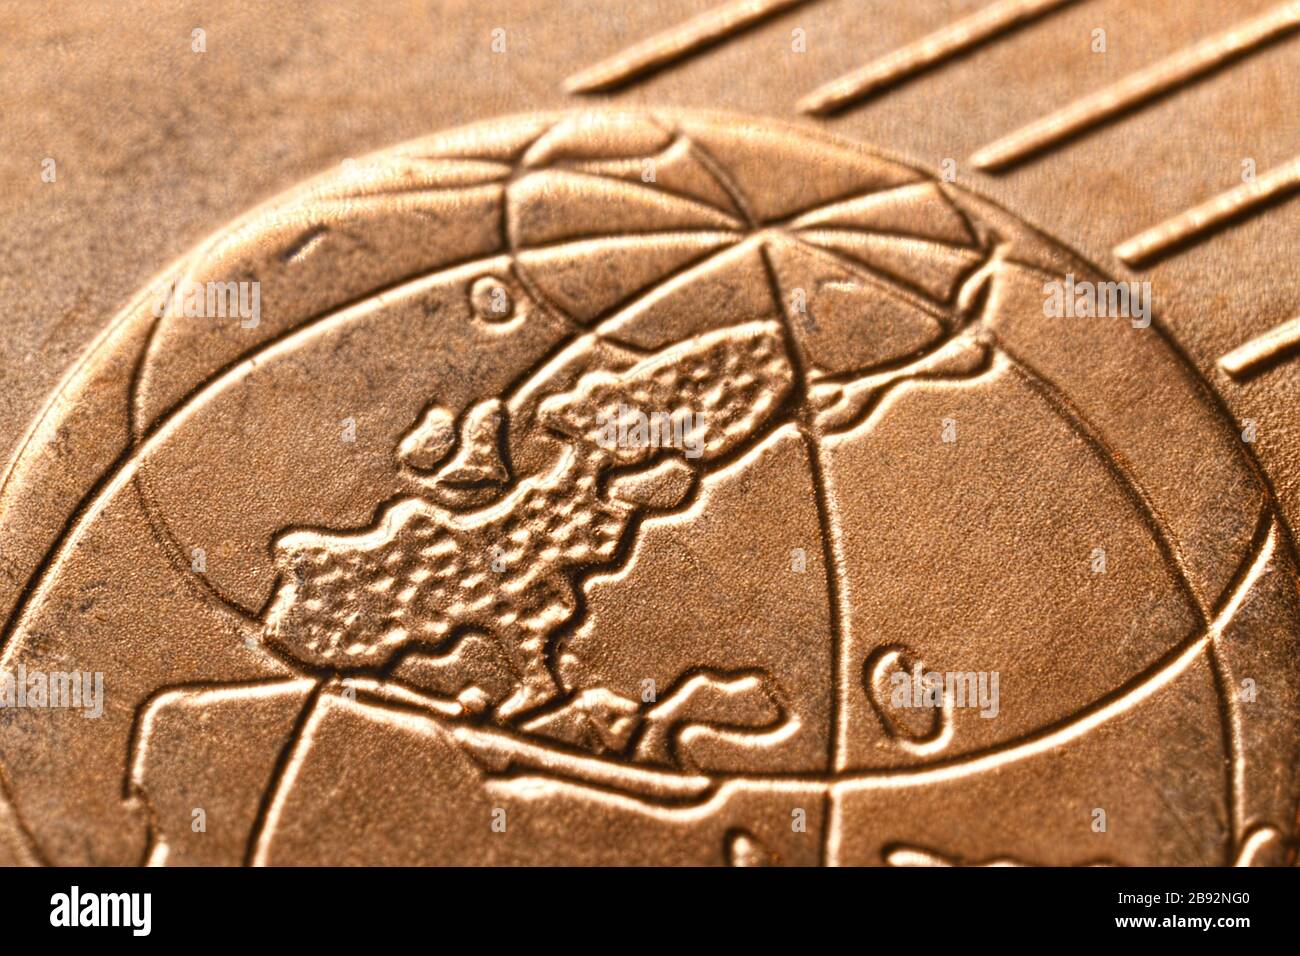 Primo piano di una moneta da cent, foto simbolica per la prevista abolizione delle monete da 1 e 2 cent, Nahaufnahme einer Centmünze, Symbolfoto für die gepante Absc Foto Stock